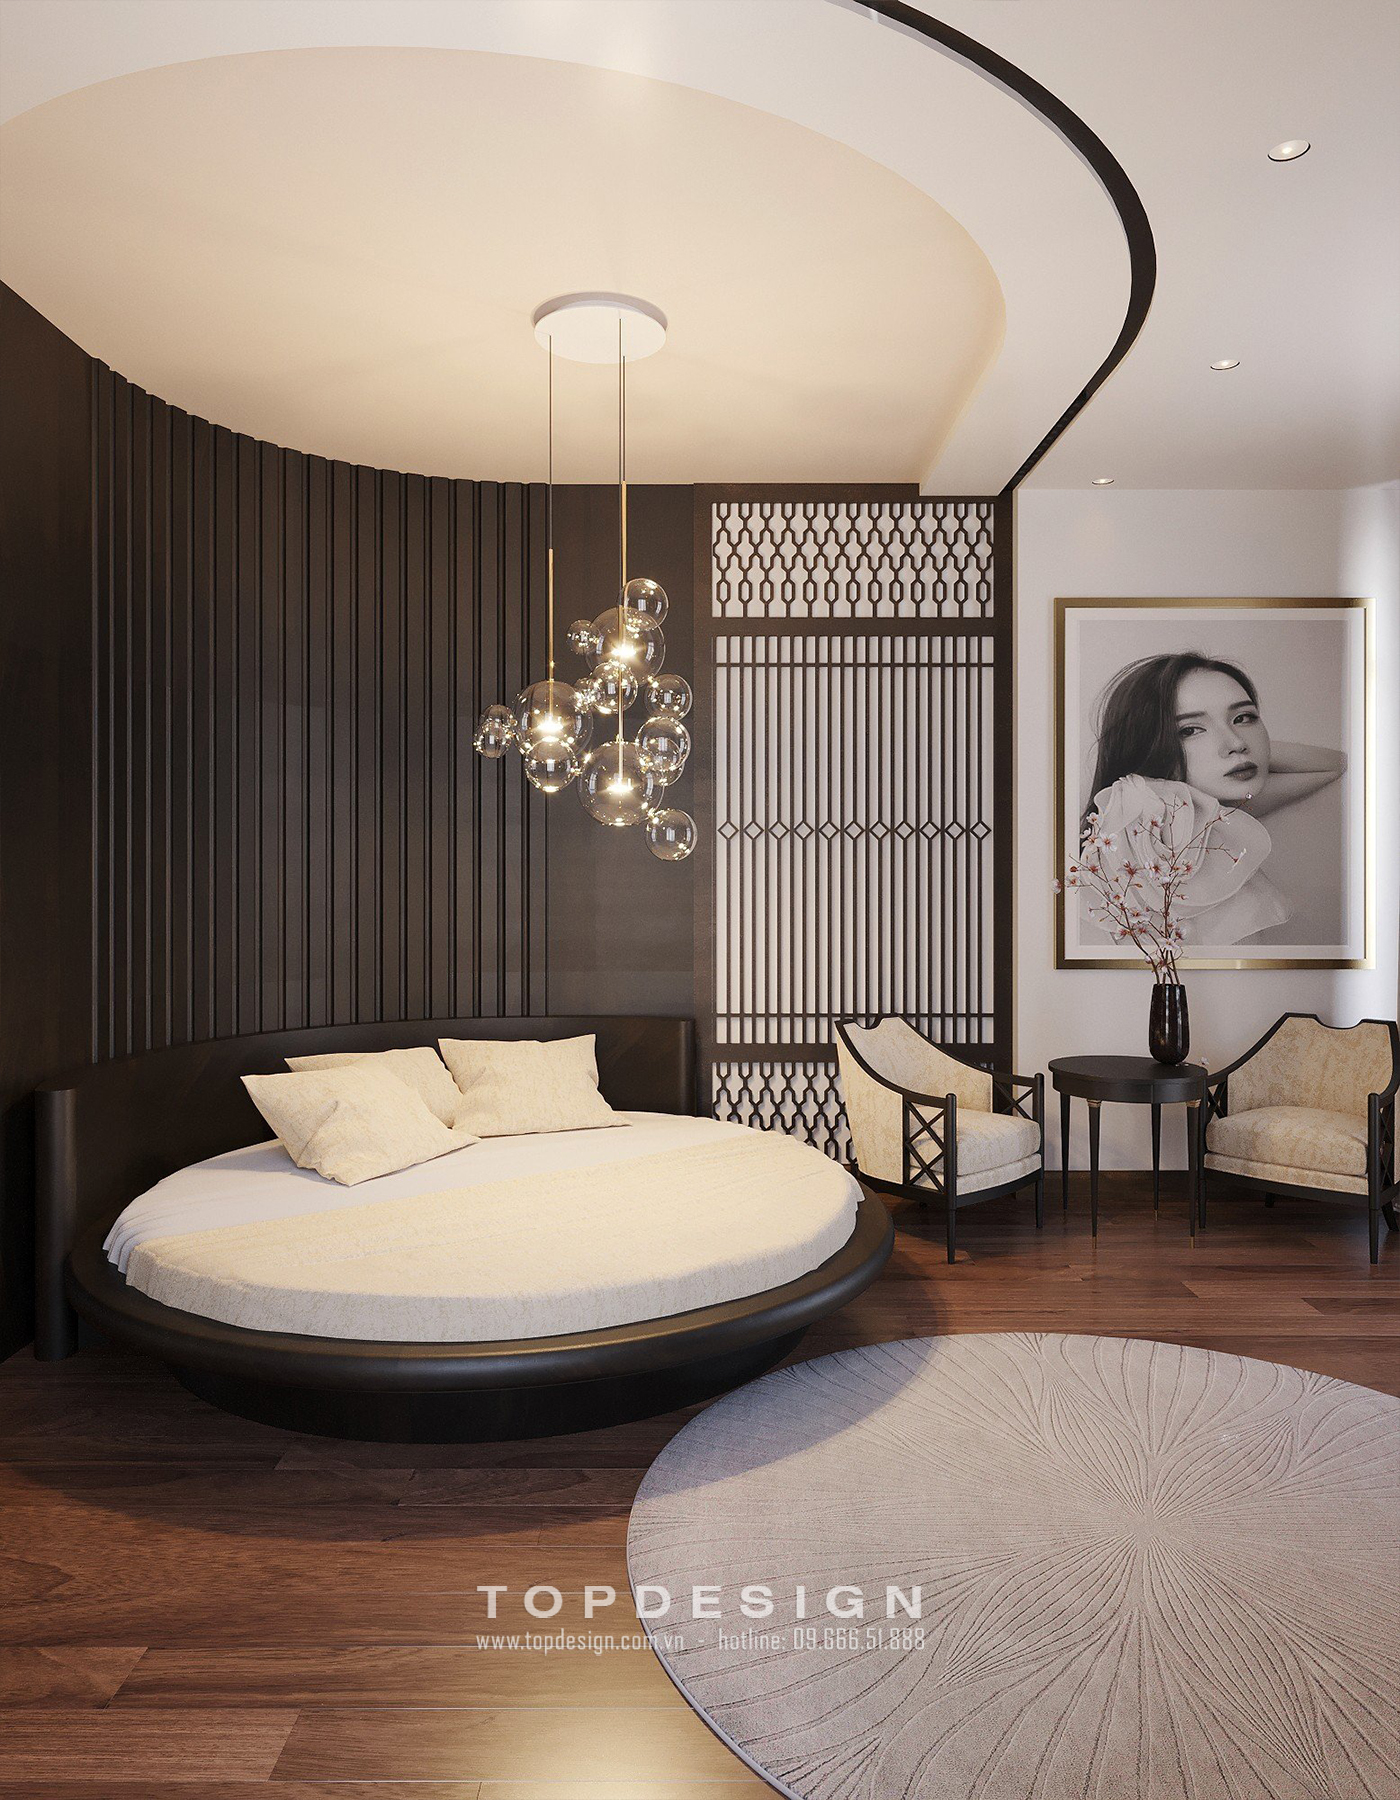 Thiết kế căn hộ chung cư phong cách Indochine tại Hà Nội